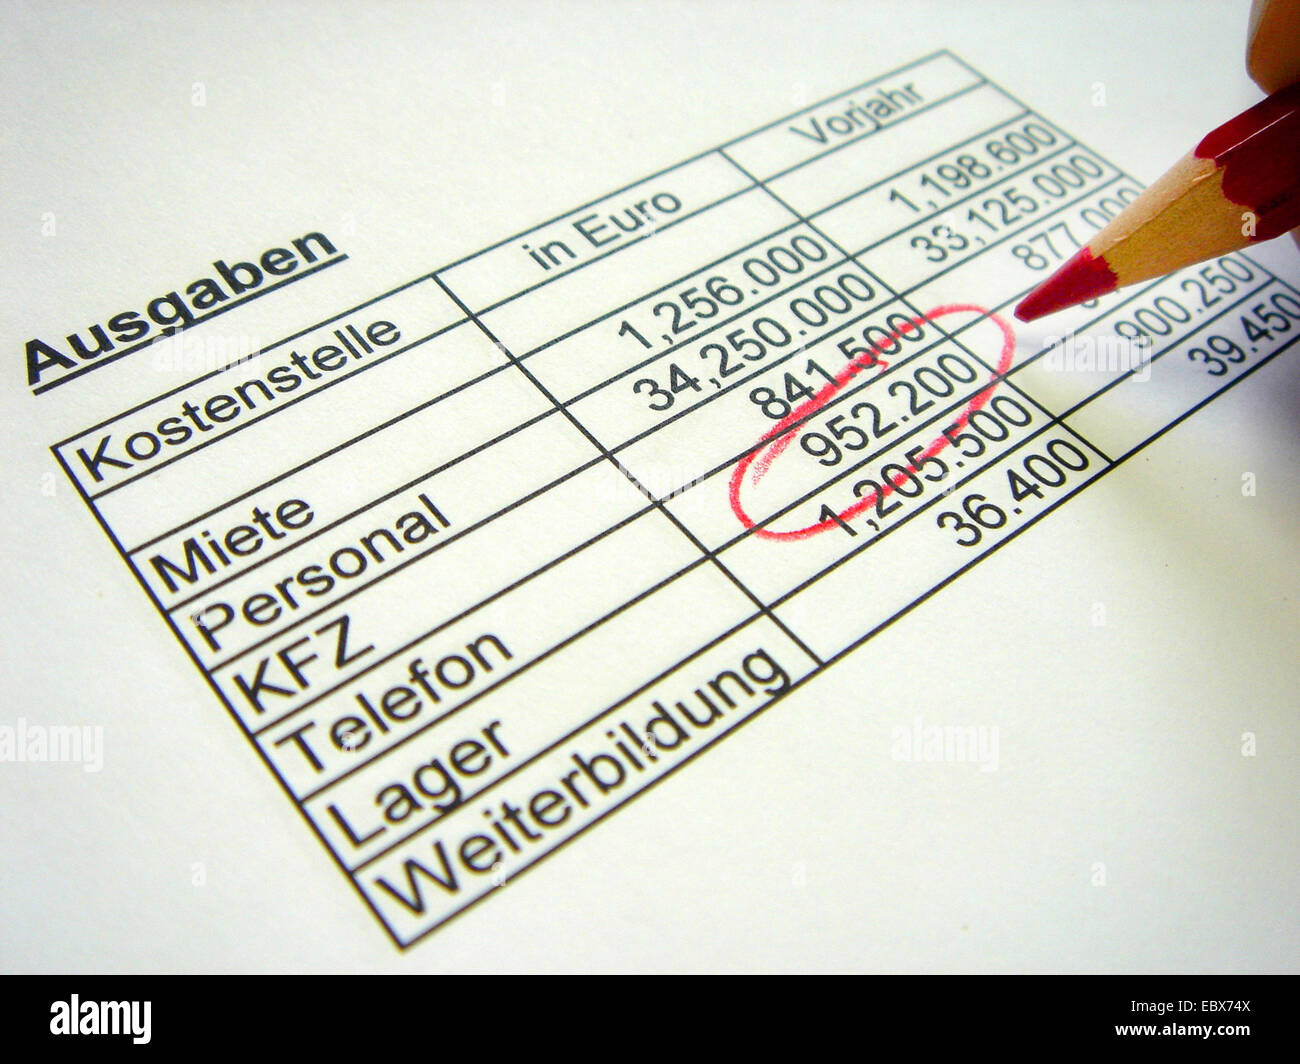 Bilanz der festen Kosten, Telefonkosten markiert mit einem roten Stift Stockfoto